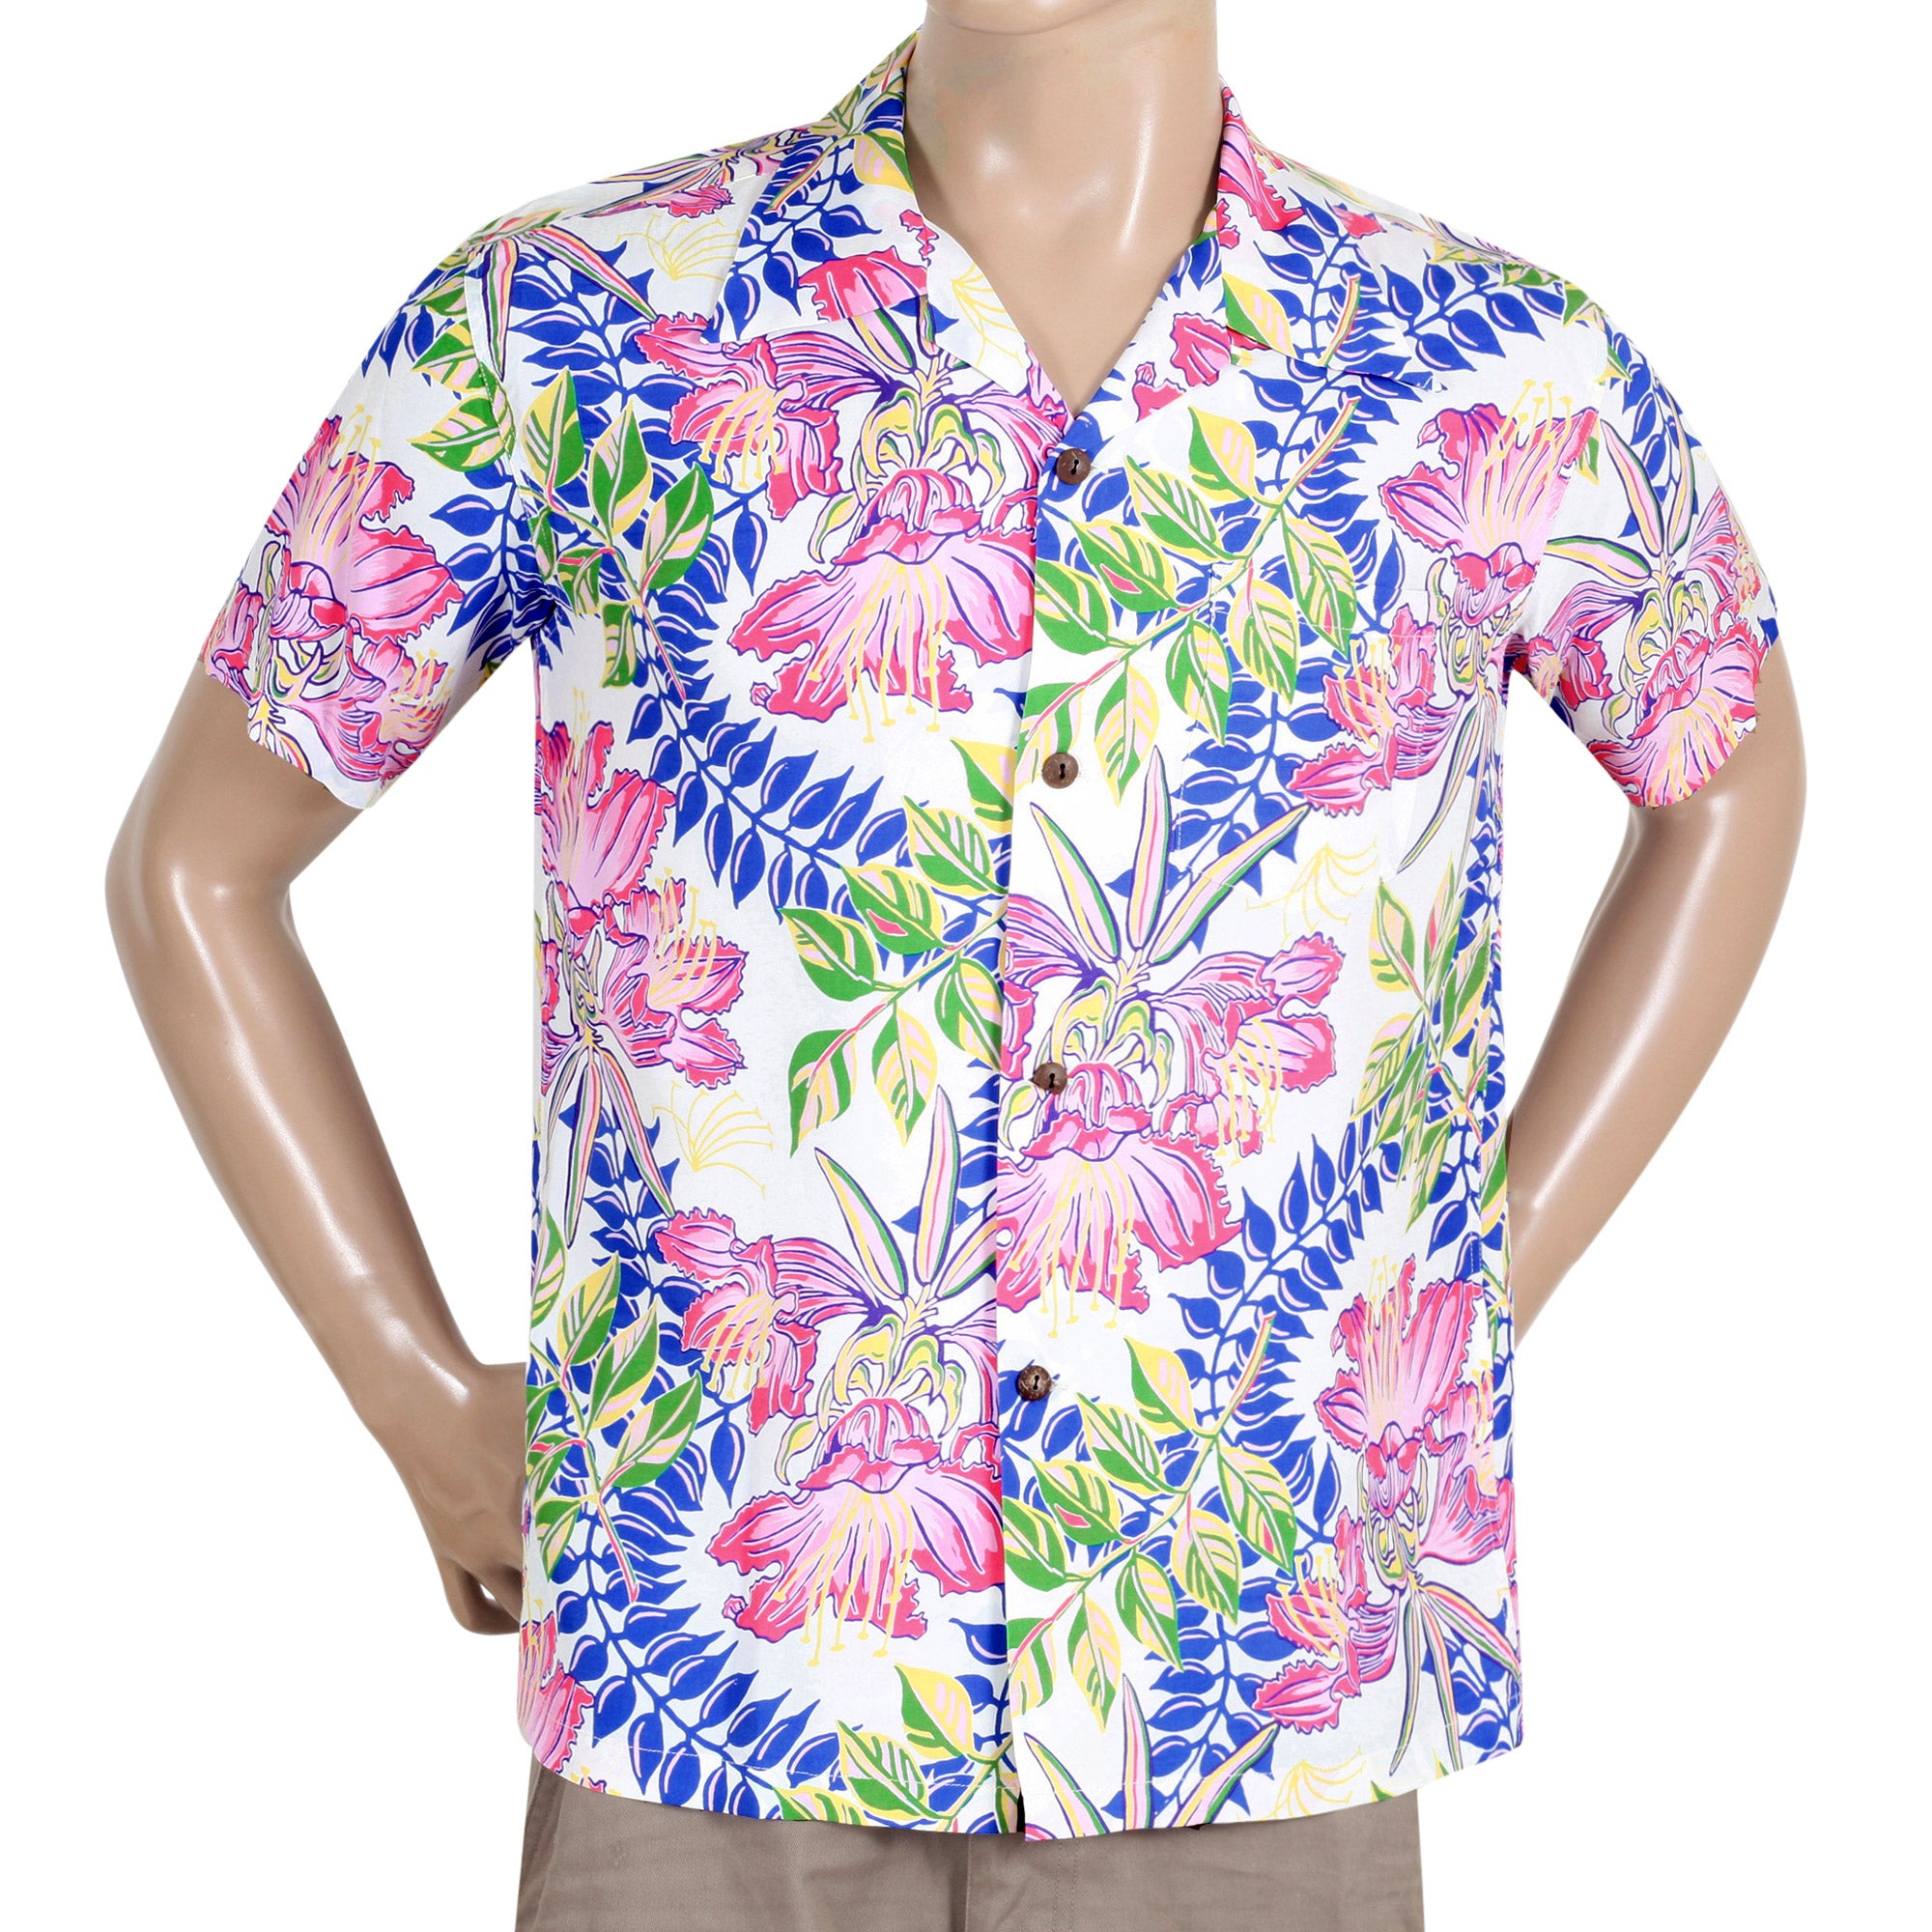 Buy Hawaiian Cotton Shirt